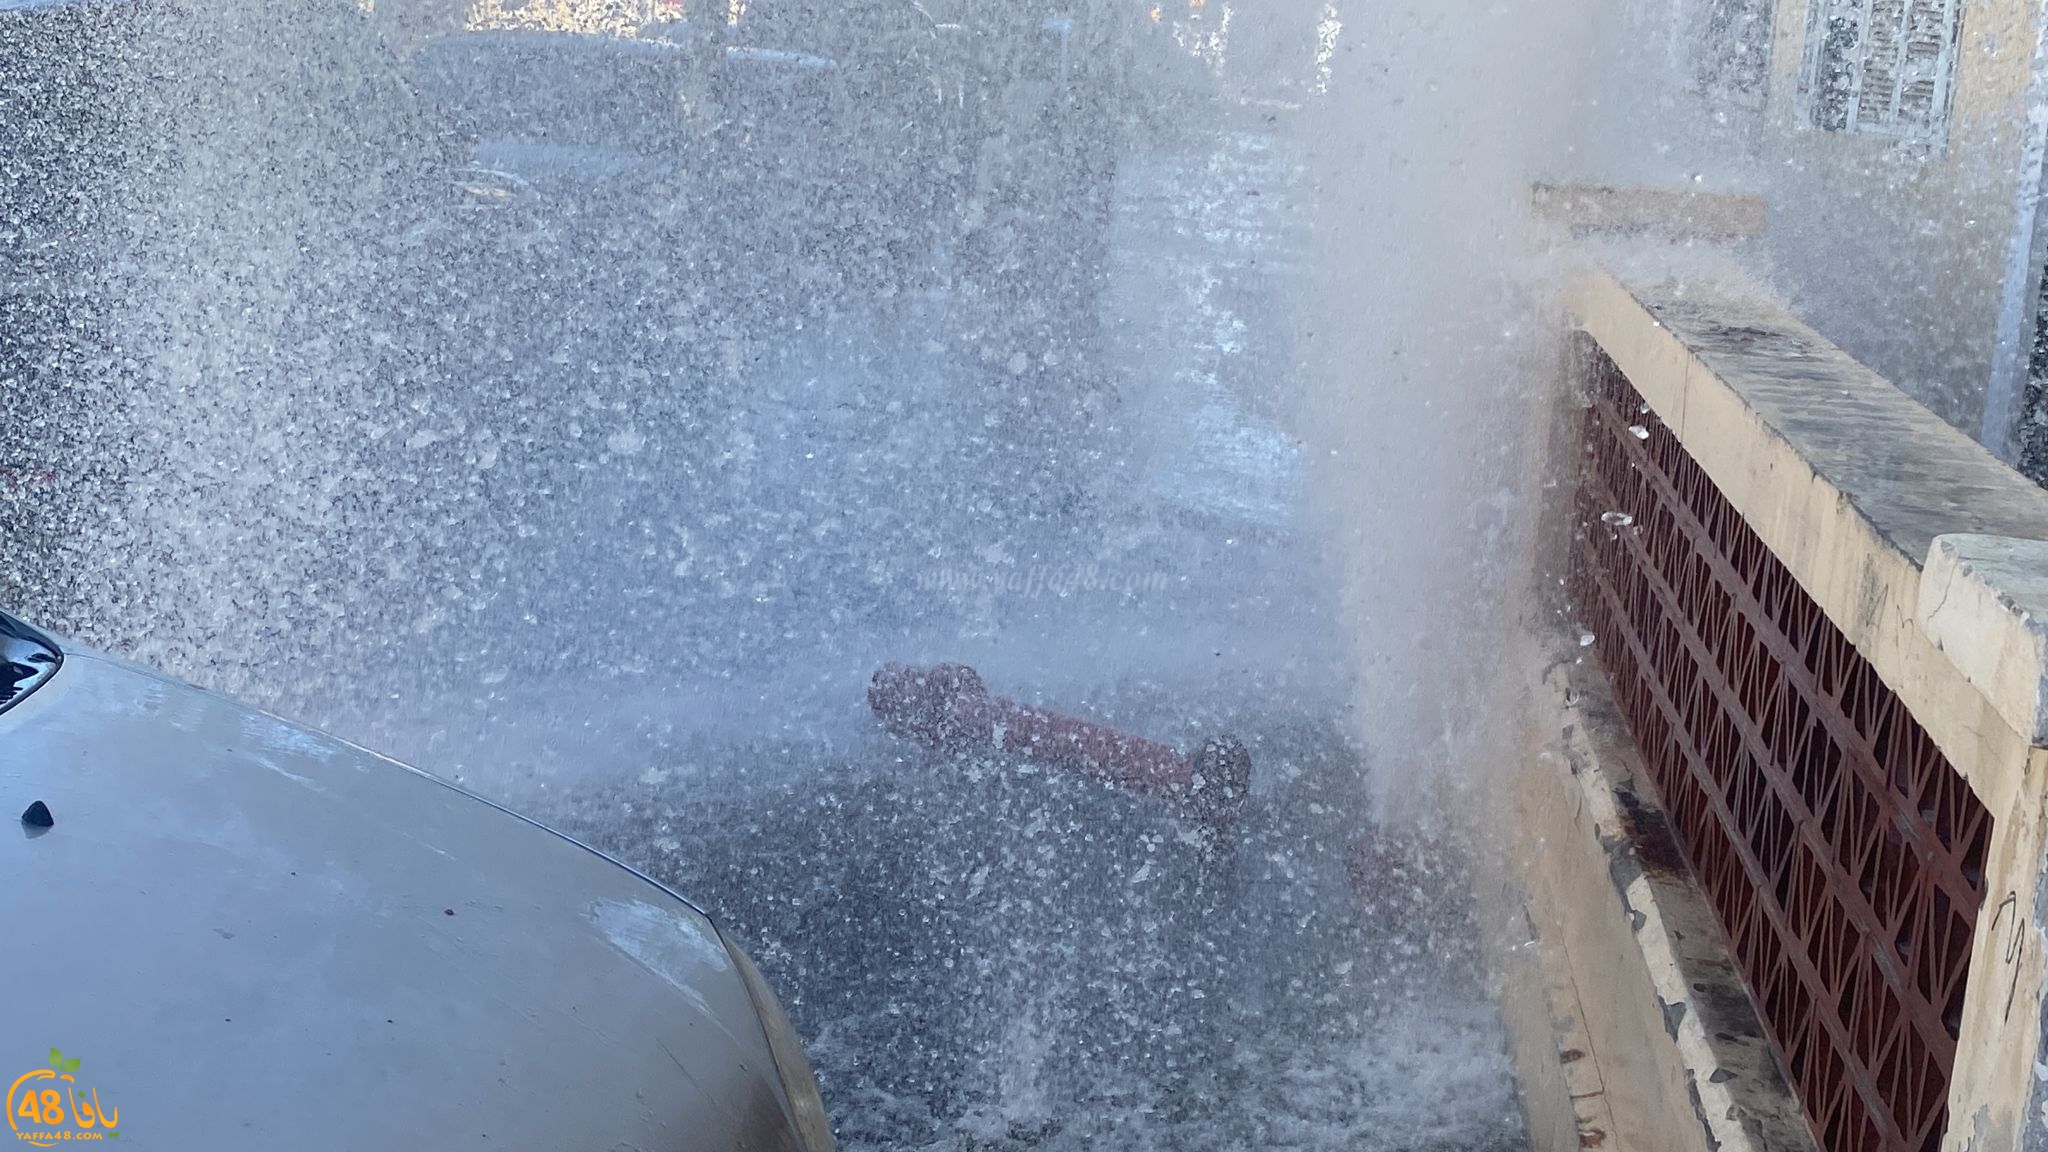  يافا: انفجار أنبوب مياه وتدفّق كميات كبيرة في الشارع